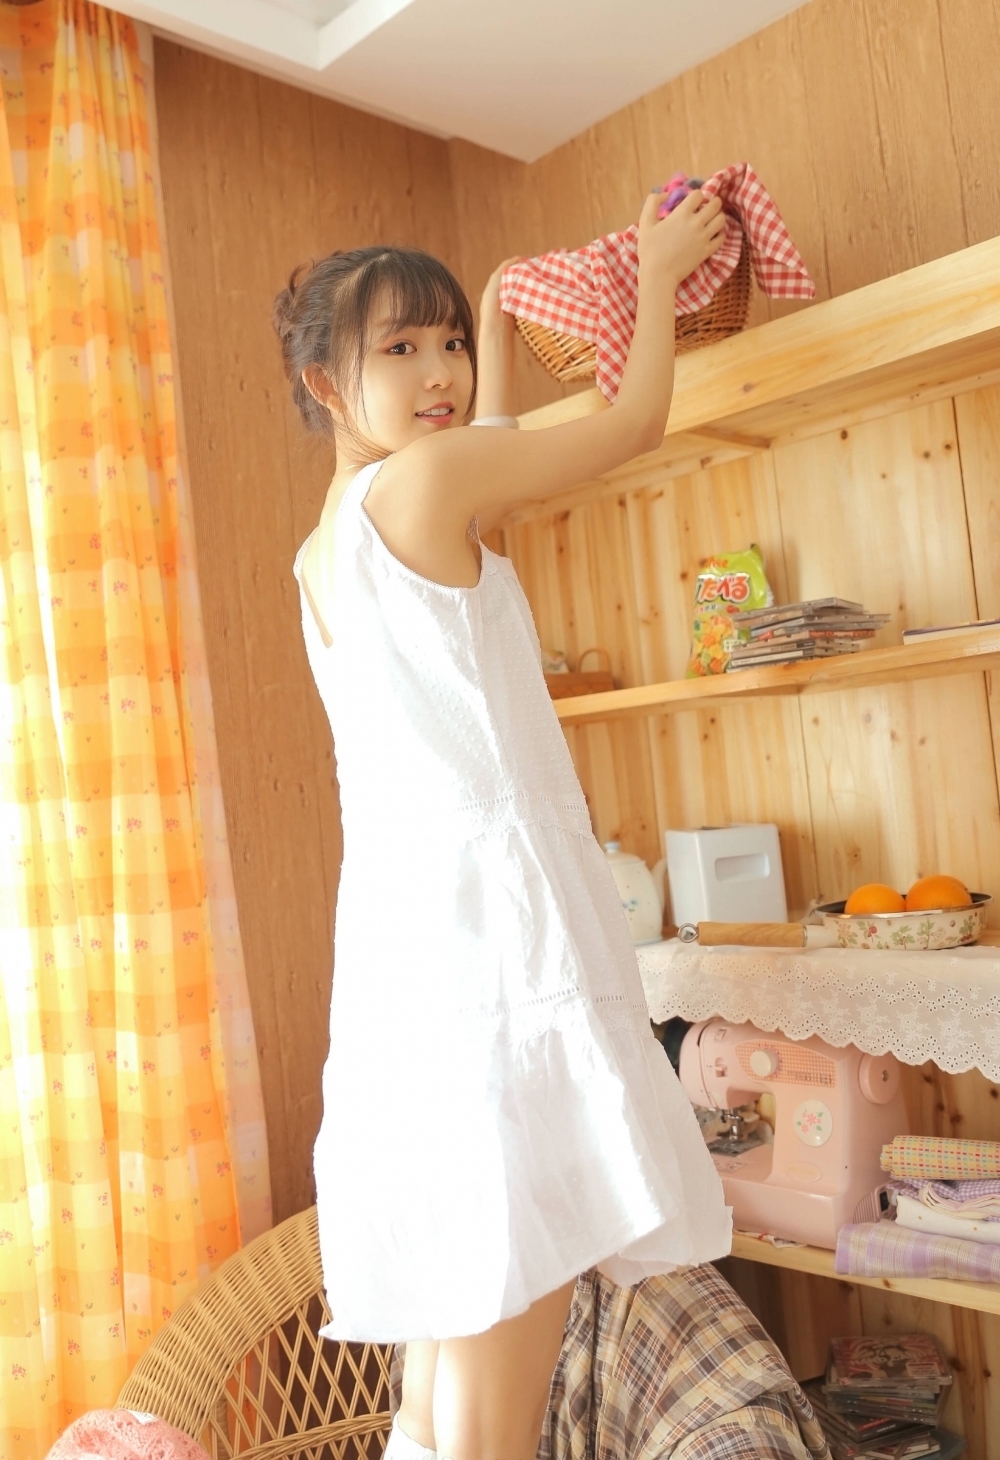 日系针织白袜吊带短裙居家少女私房写真